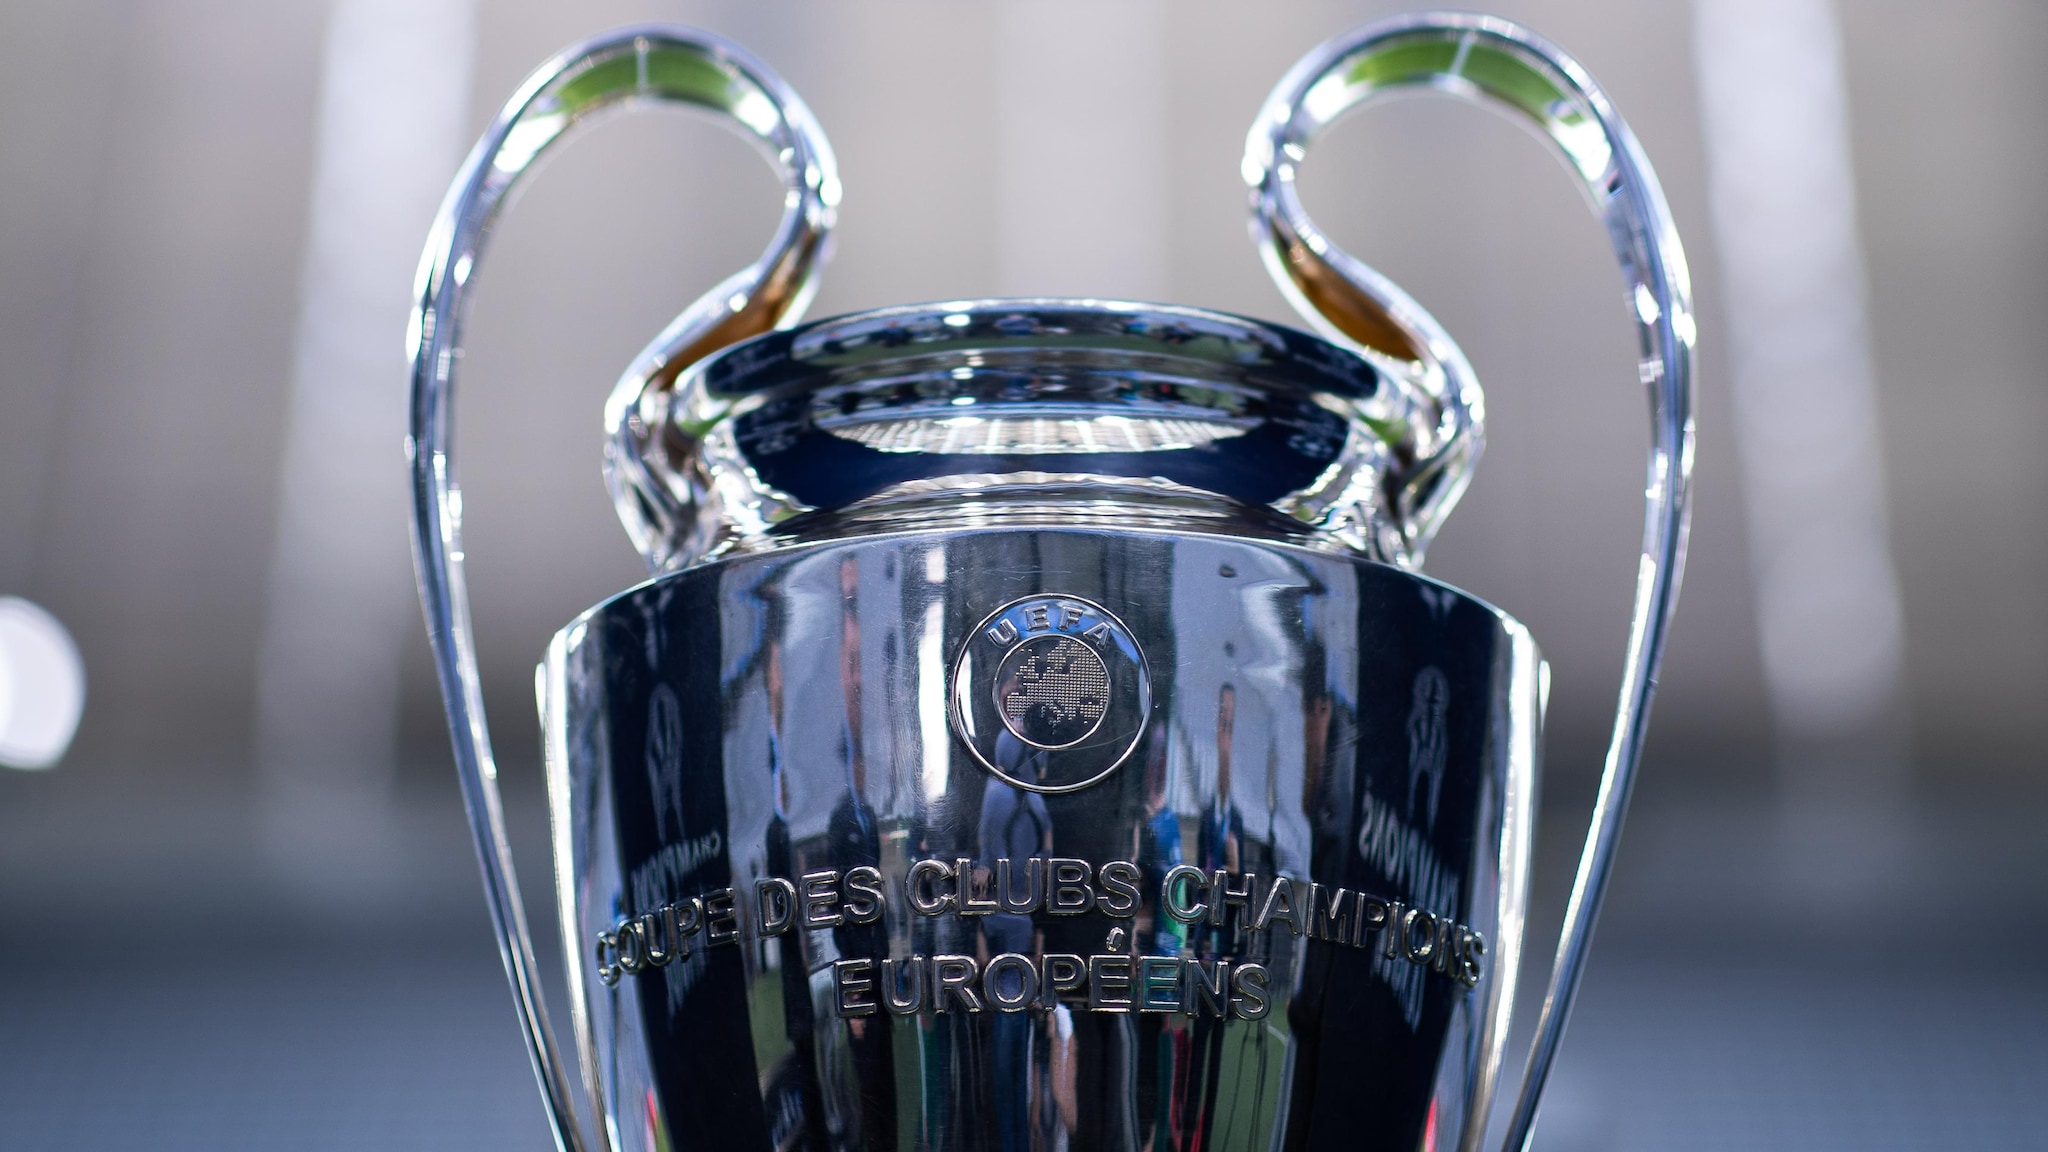 Les clubs qui ont gagné tous les trophées UEFA